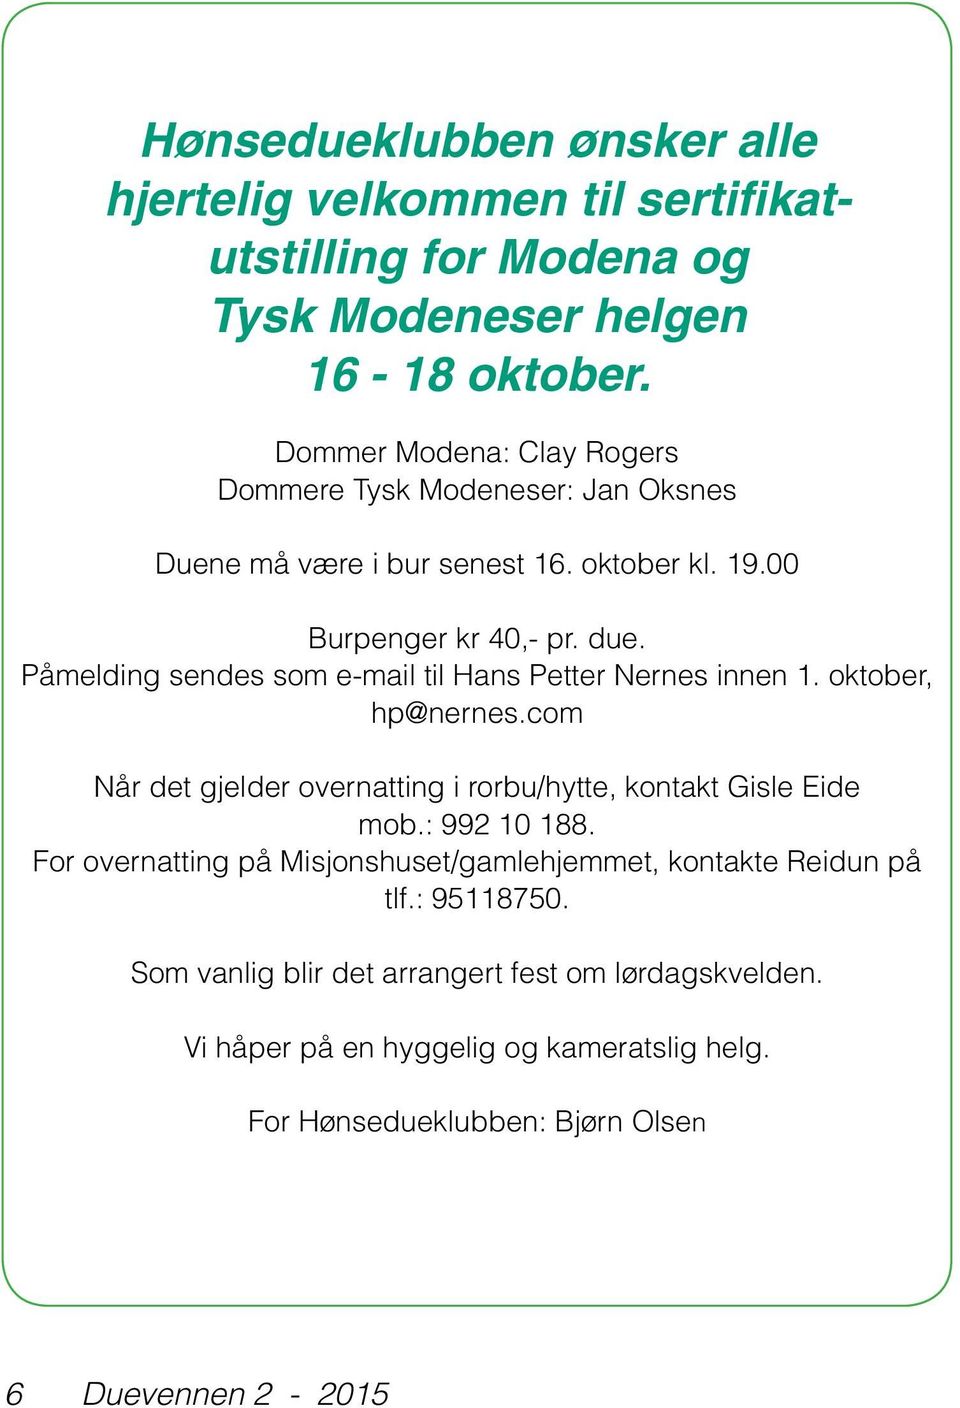 Påmelding sendes som e-mail til Hans Petter Nernes innen 1. oktober, hp@nernes.com Når det gjelder overnatting i rorbu/hytte, kontakt Gisle Eide mob.: 992 10 188.